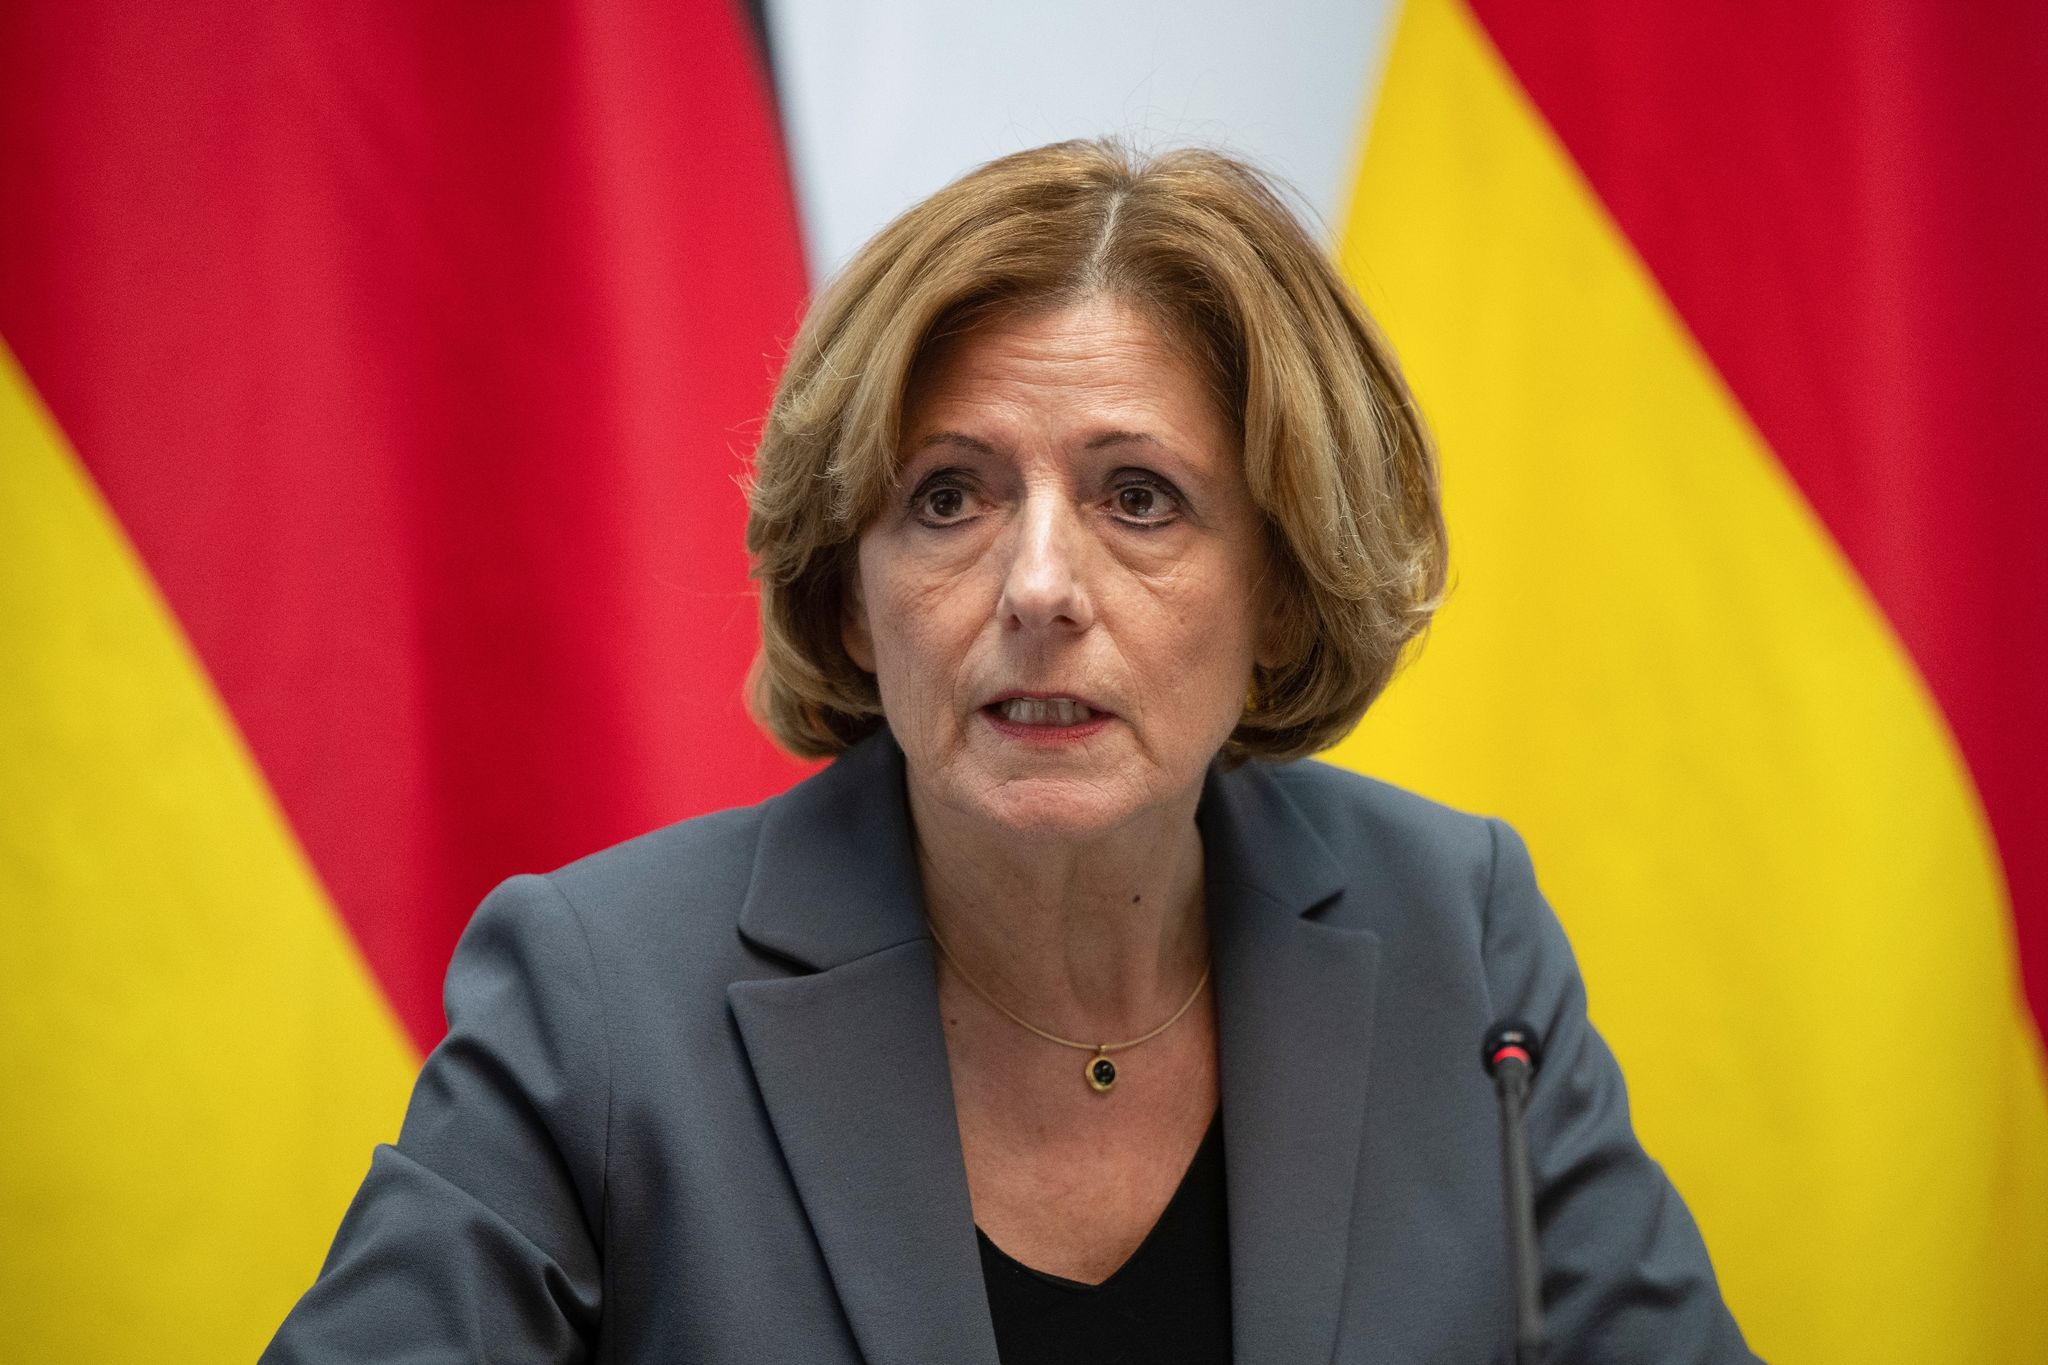 dreyer verurteilt angriffe auf politiker: «fassungslos»